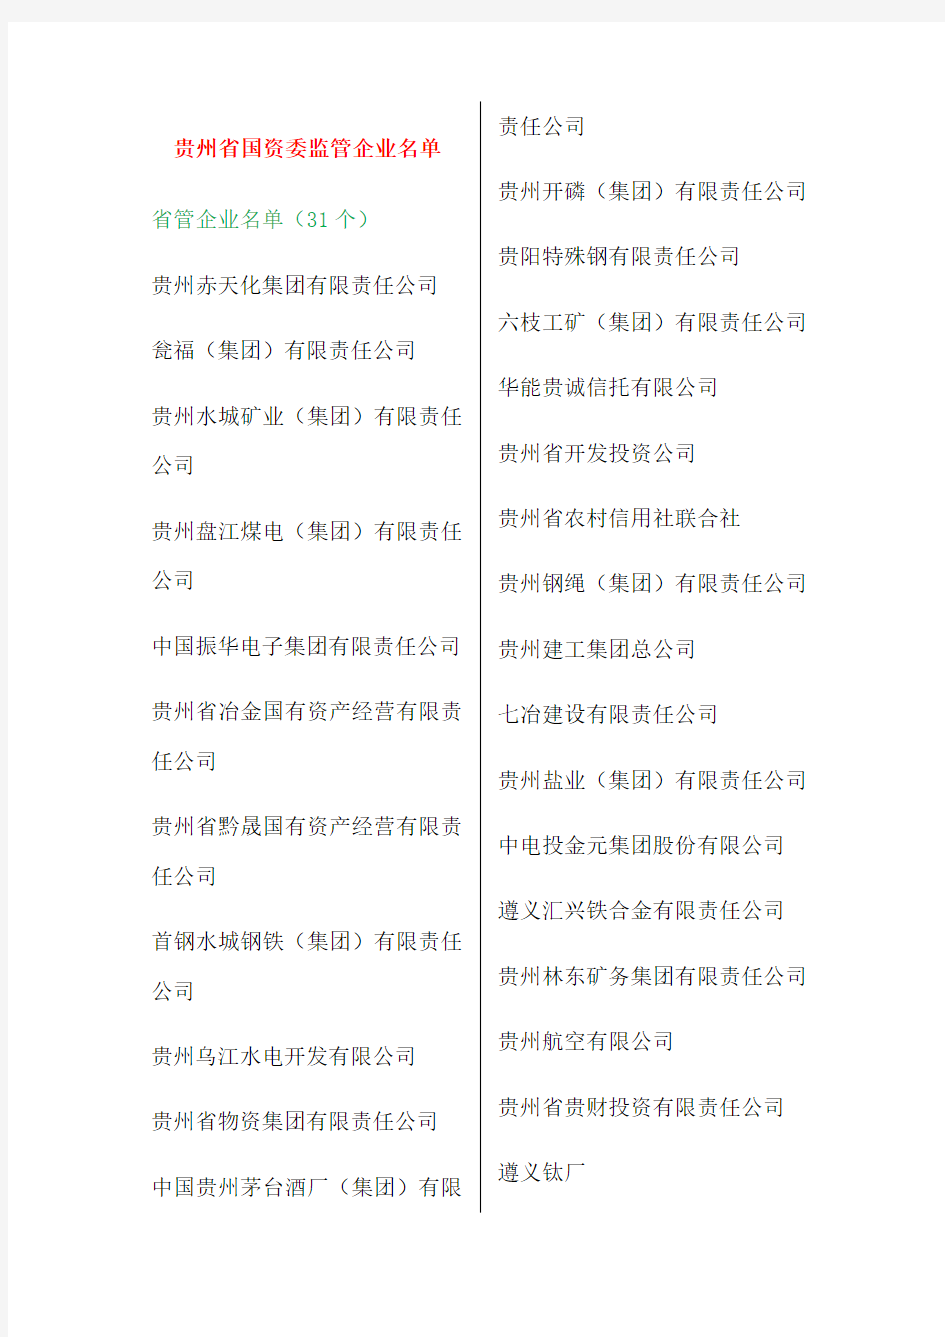 贵州省国资委监管企业名单